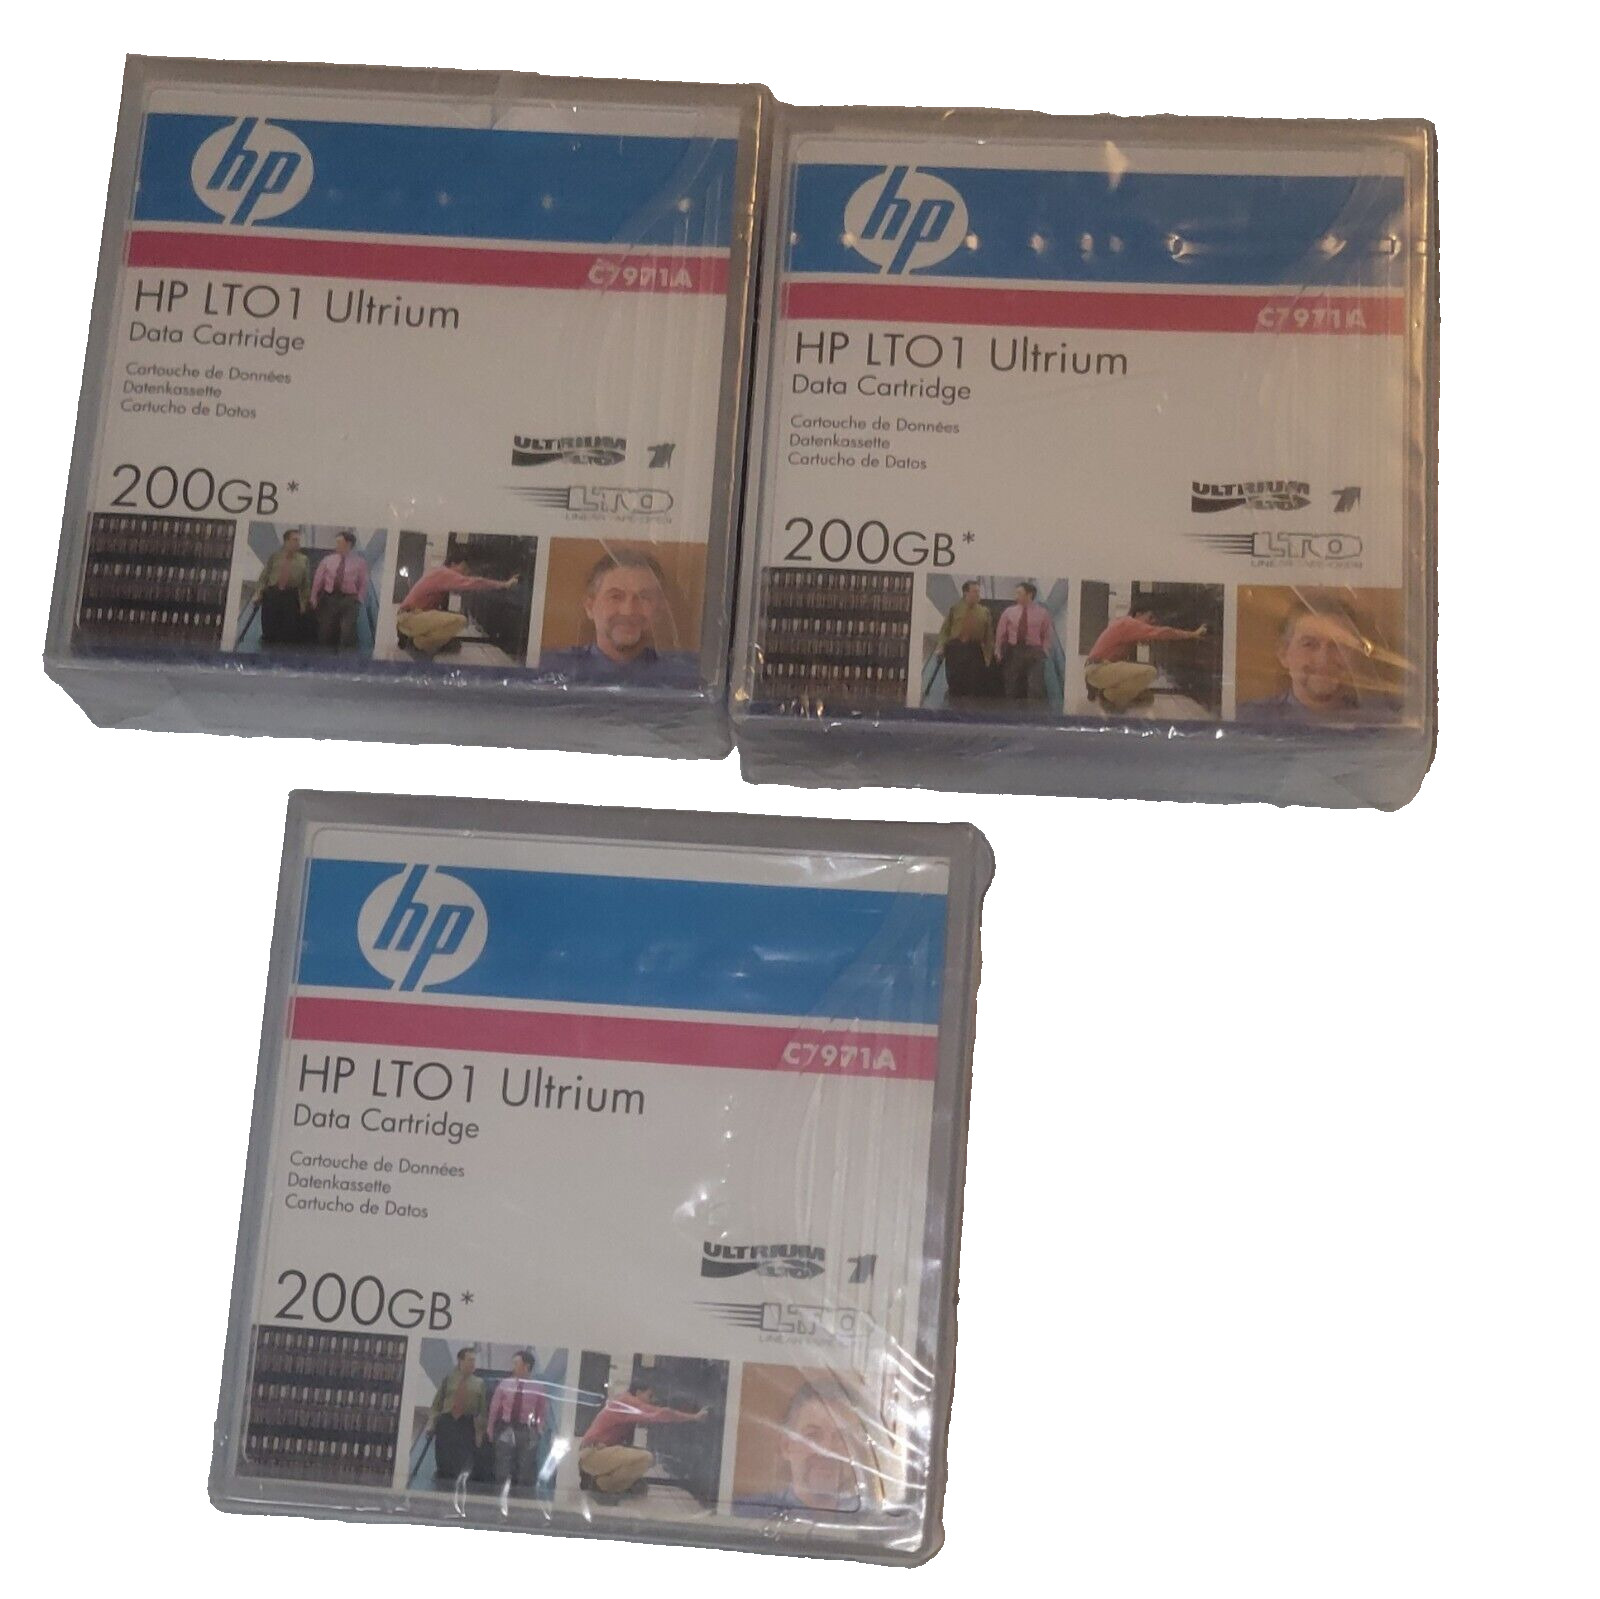 3x HP LTO-1 LTO1 Ultrium 200GB Tape Data Cartridge C7971A NEW Sealed